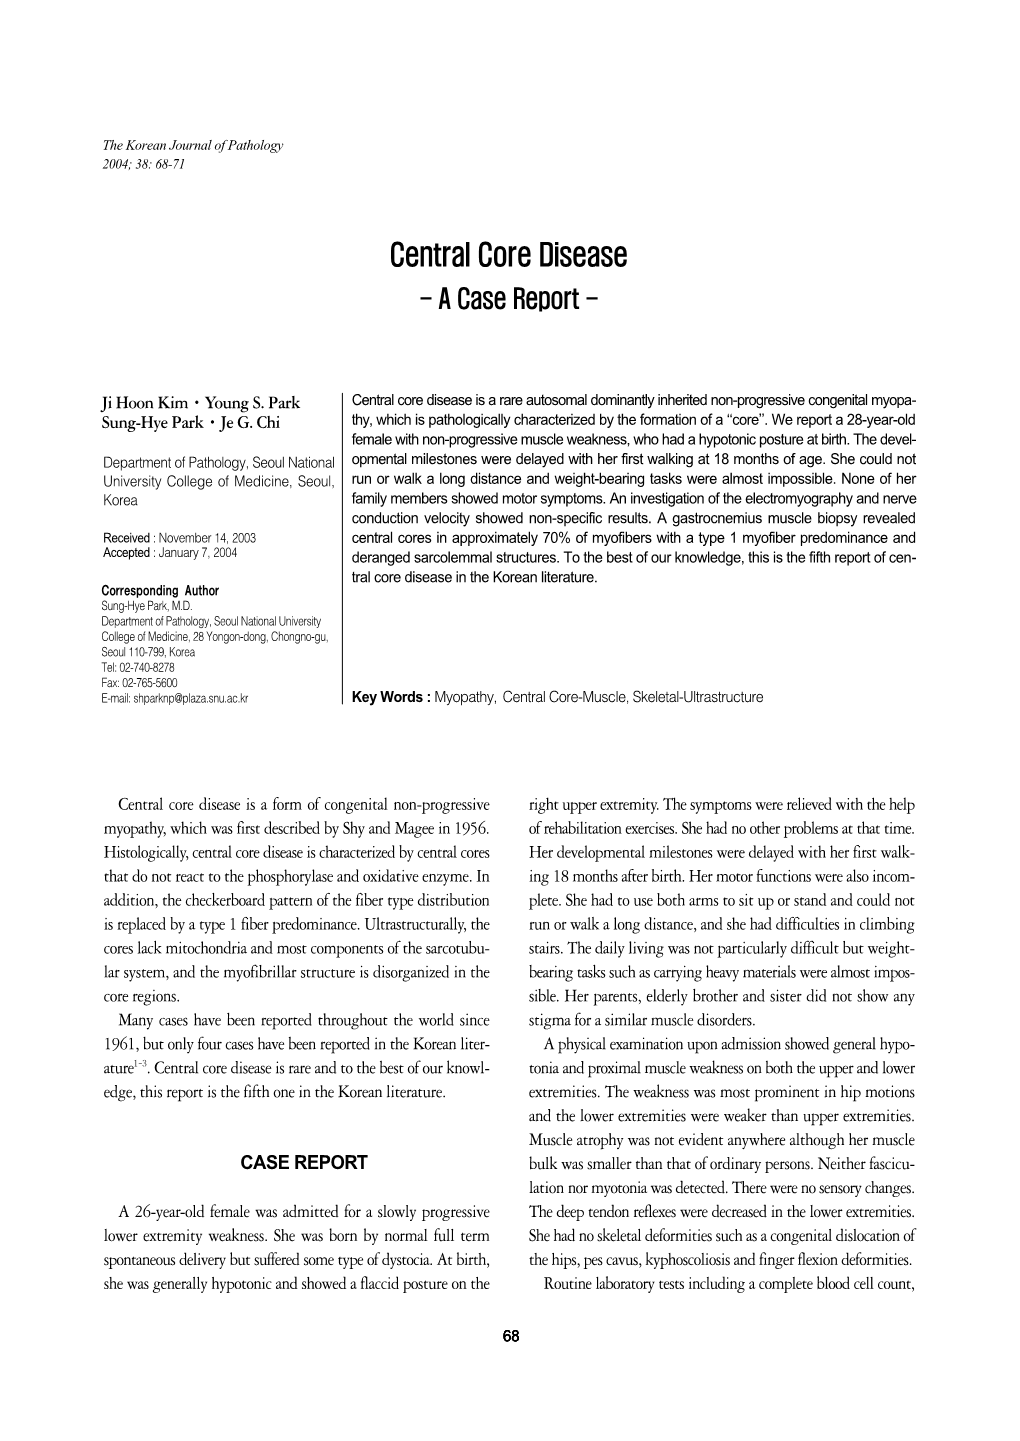 Central Core Disease - a Case Report